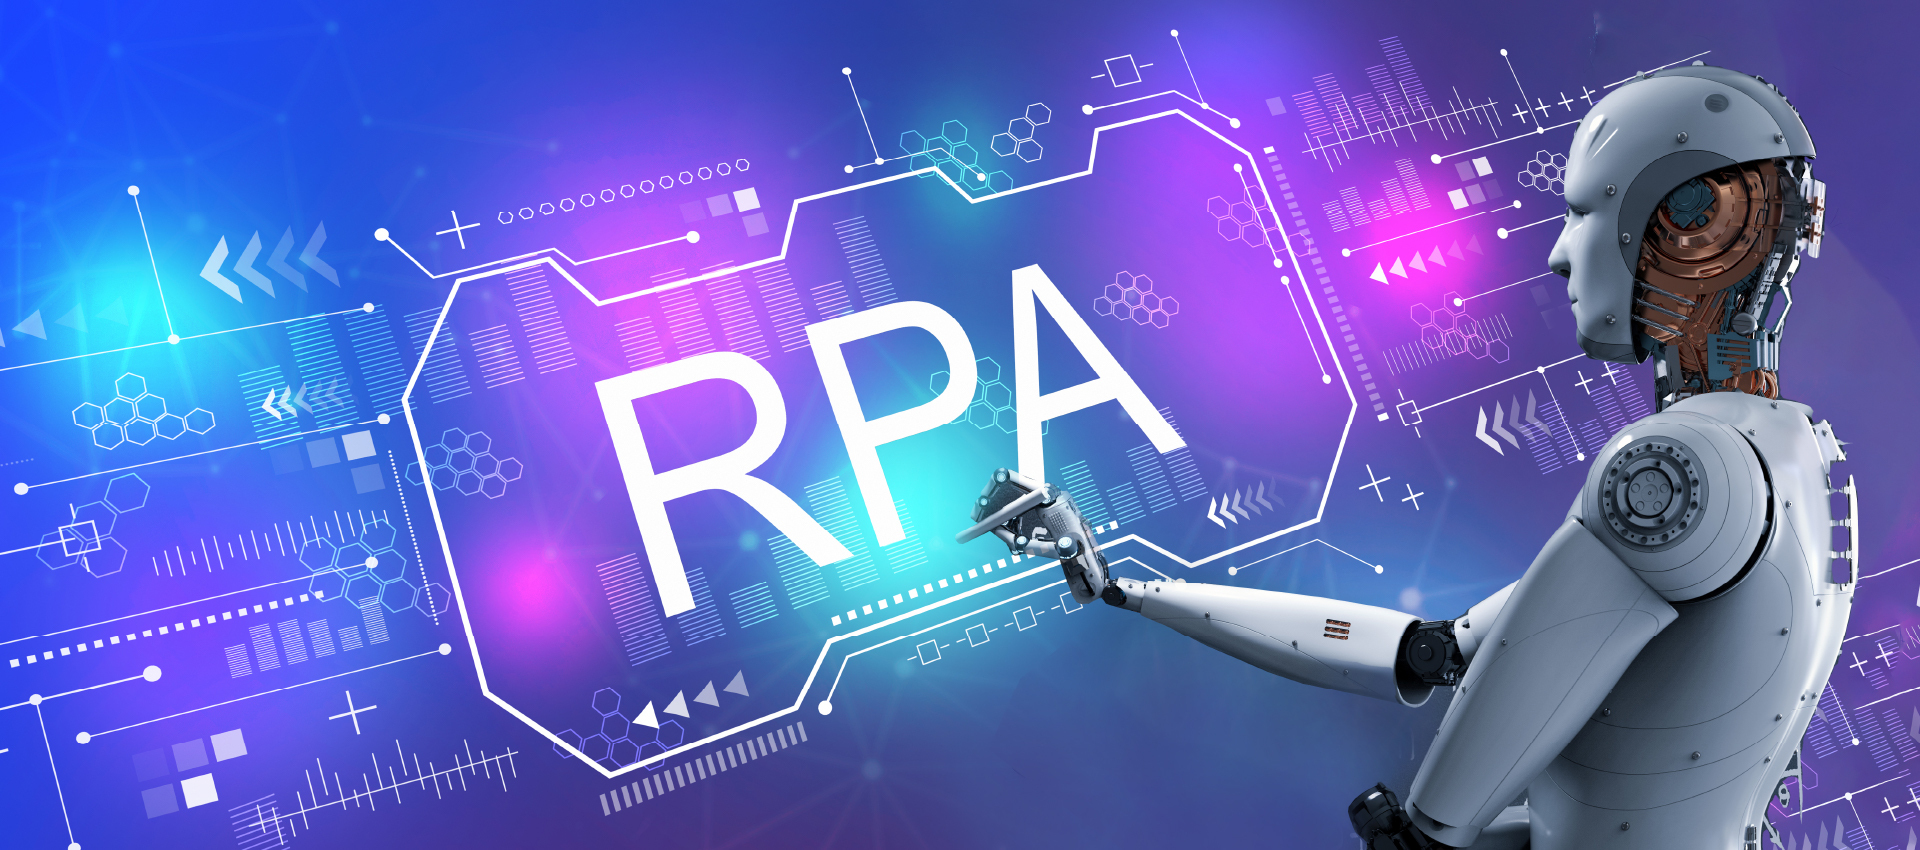 RPAaaS是什么?为何能够推进RPA人人可用?